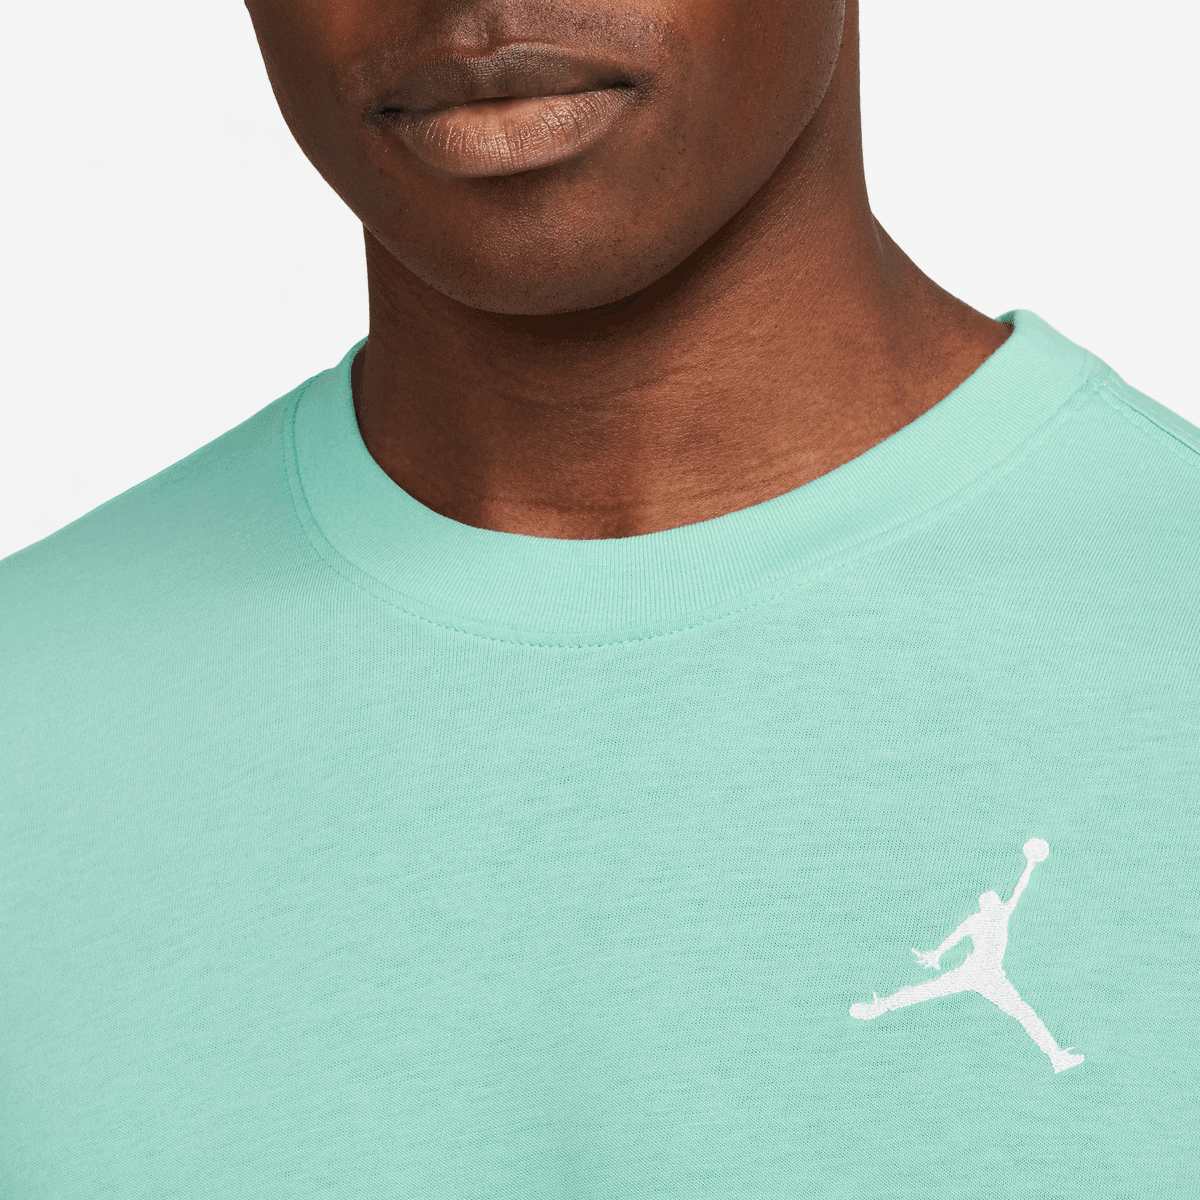 Jordan Jumpman Emb Shortsleeve Crew T-shirts Heren emerald rise white maat: S beschikbare maaten:S M L XL